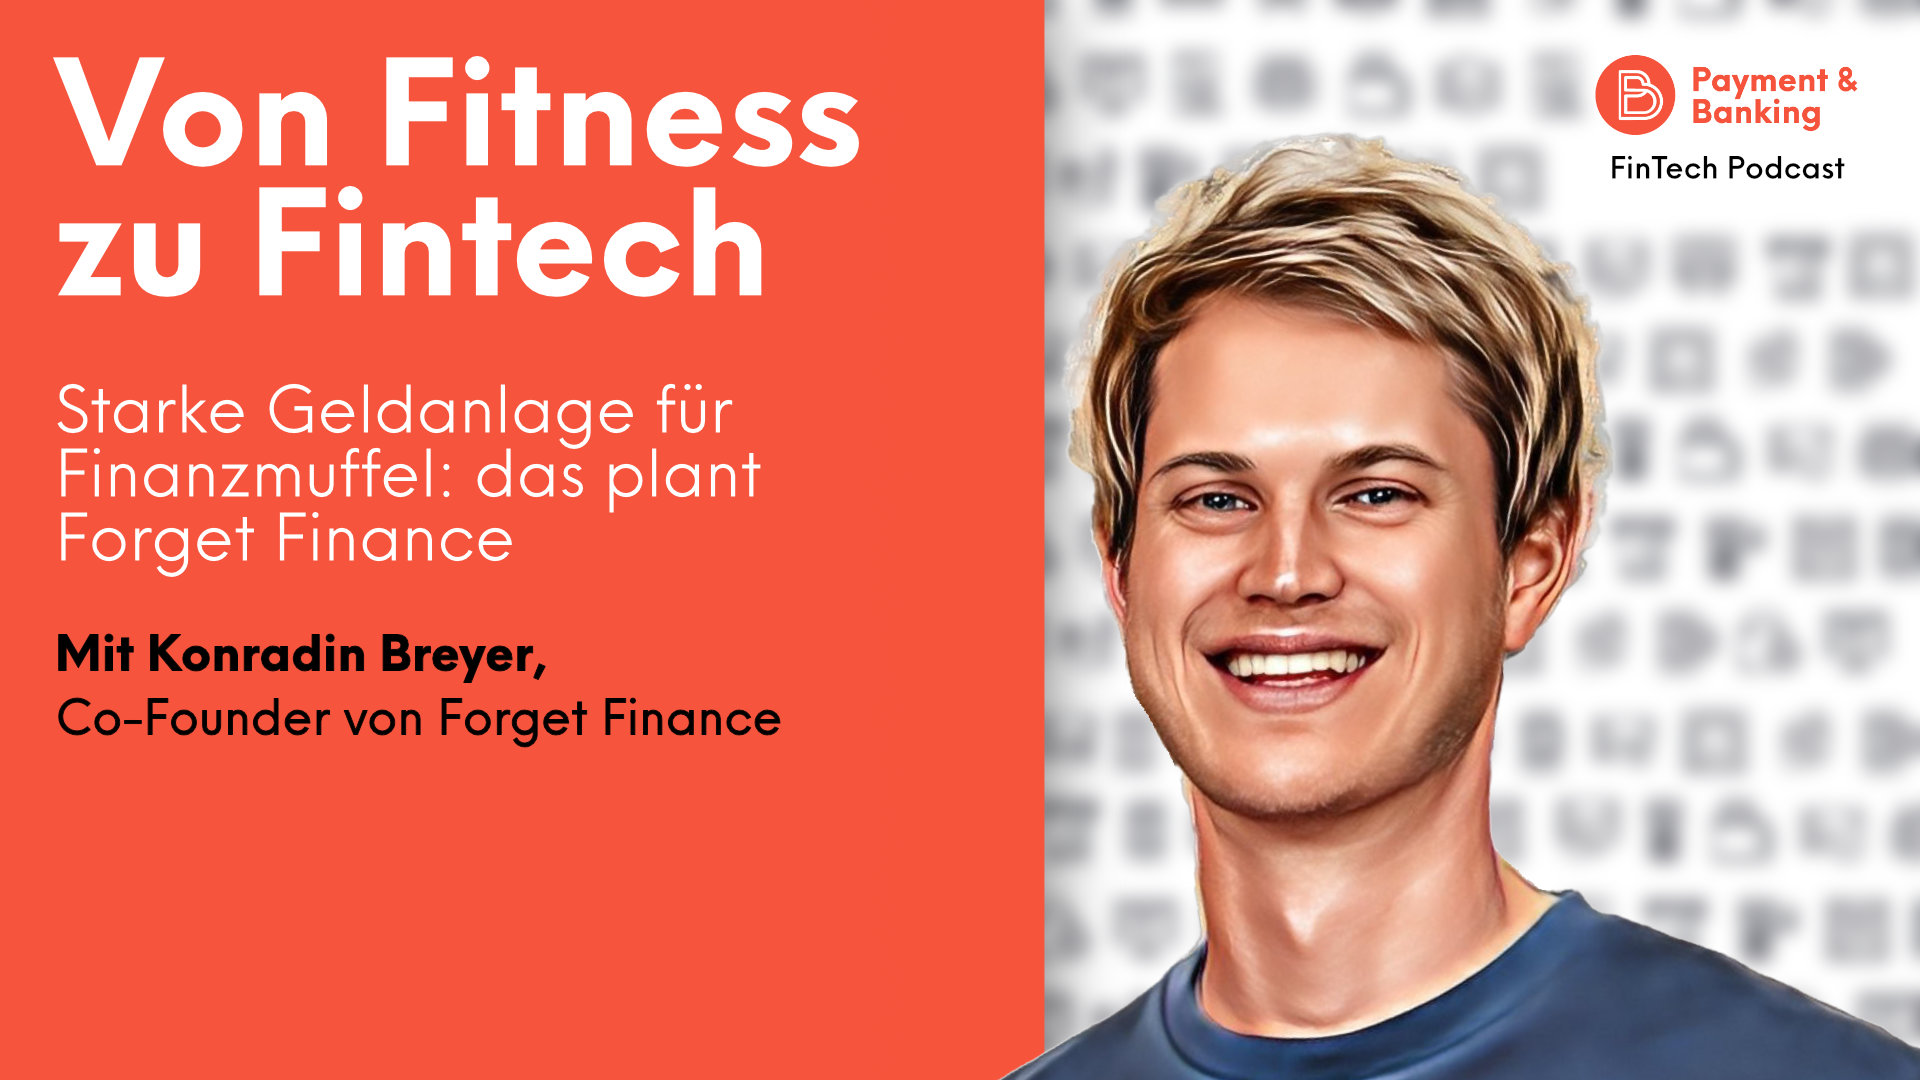 Forget Finance Gründer Konradin Breyer spricht im Podcast über sein Start-up und seine erfolgreiche Vergangenheit mit der App Freeletics.